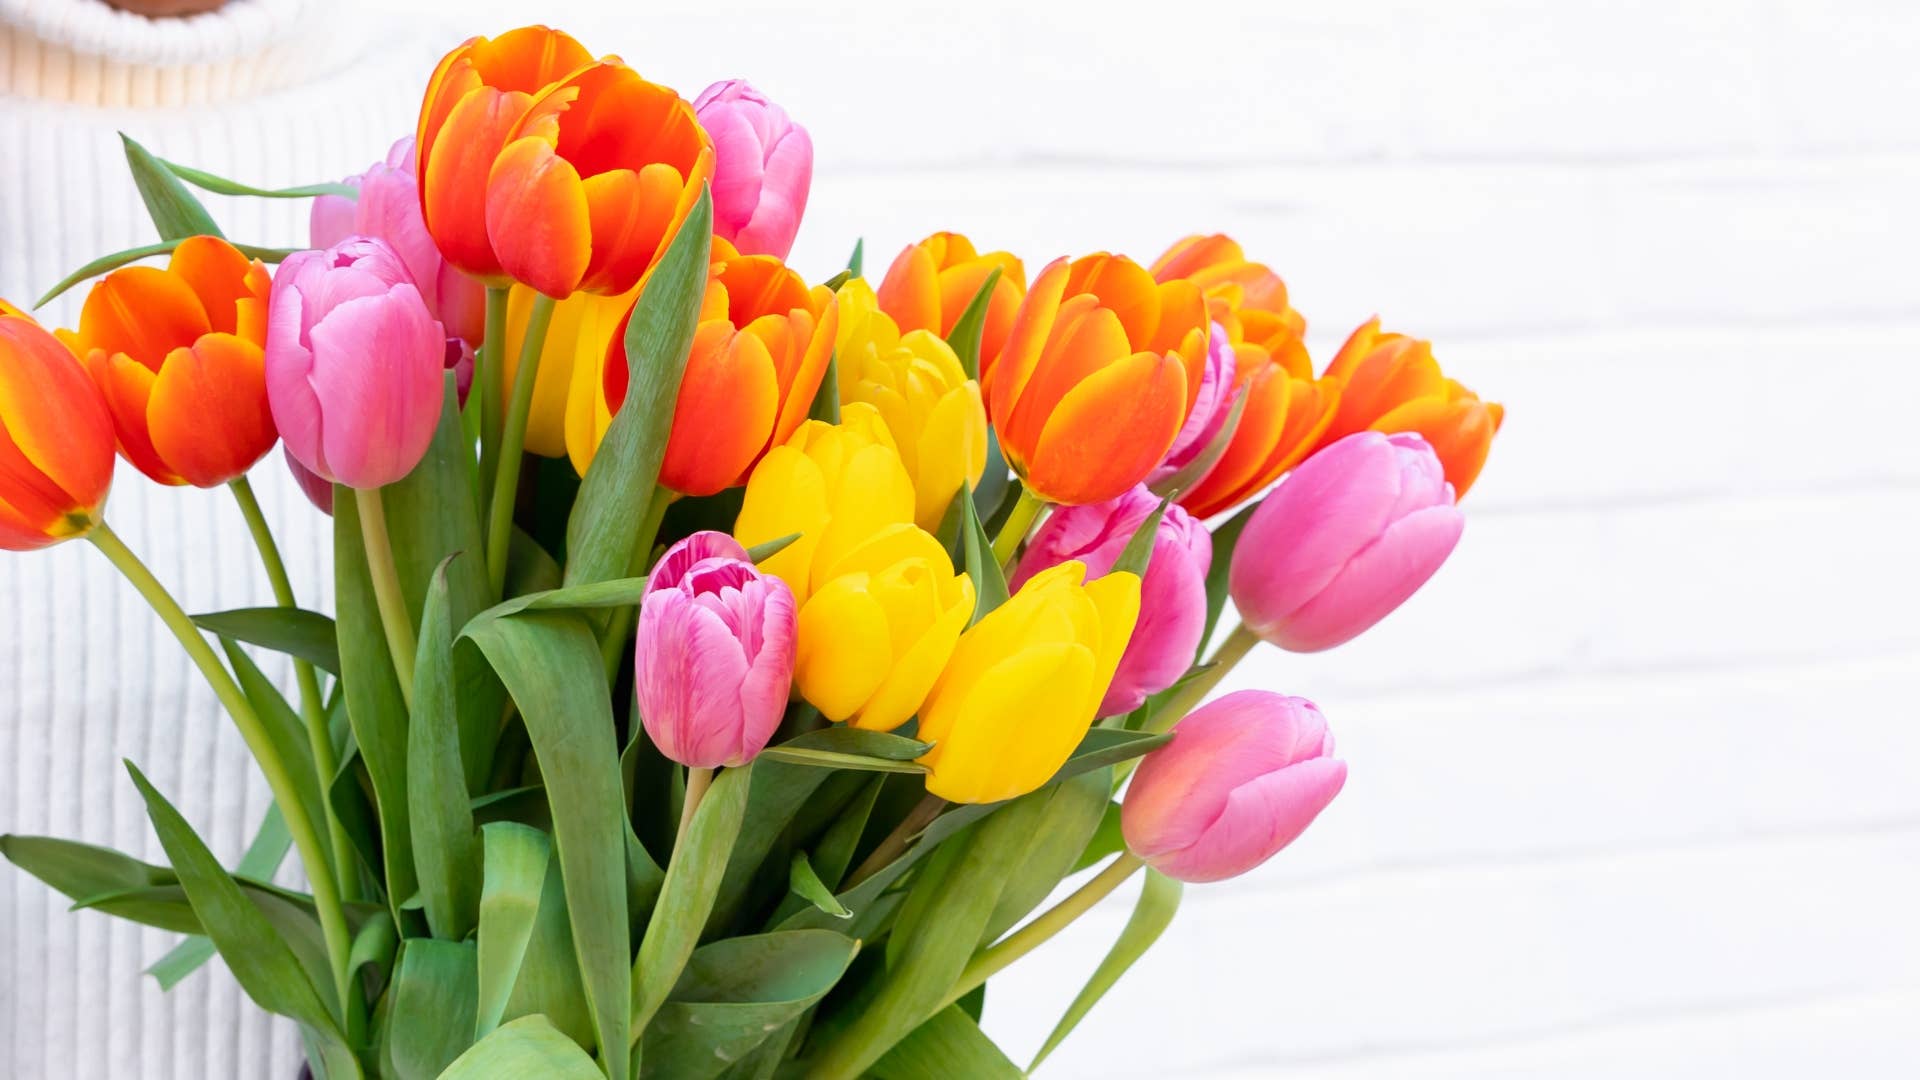 ### Multicolored Tulips ###